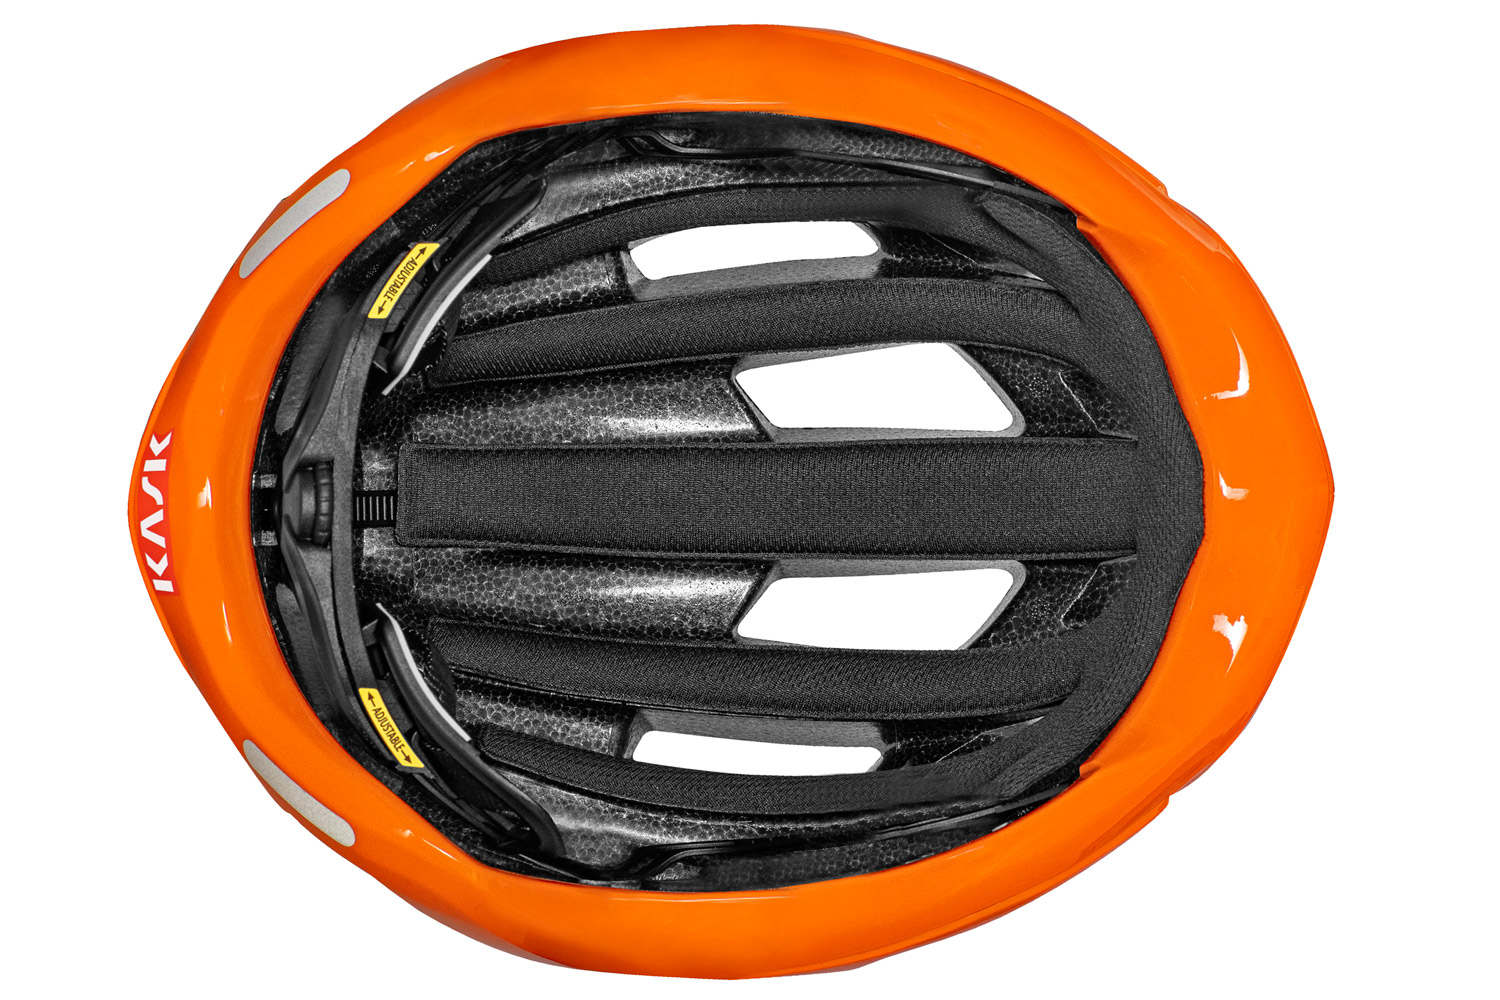 Kask-Mojito3-road-helmet_updated-redesigned-lightweight-fully-vented-semi-aero-road-bike-helmet_inside.jpg